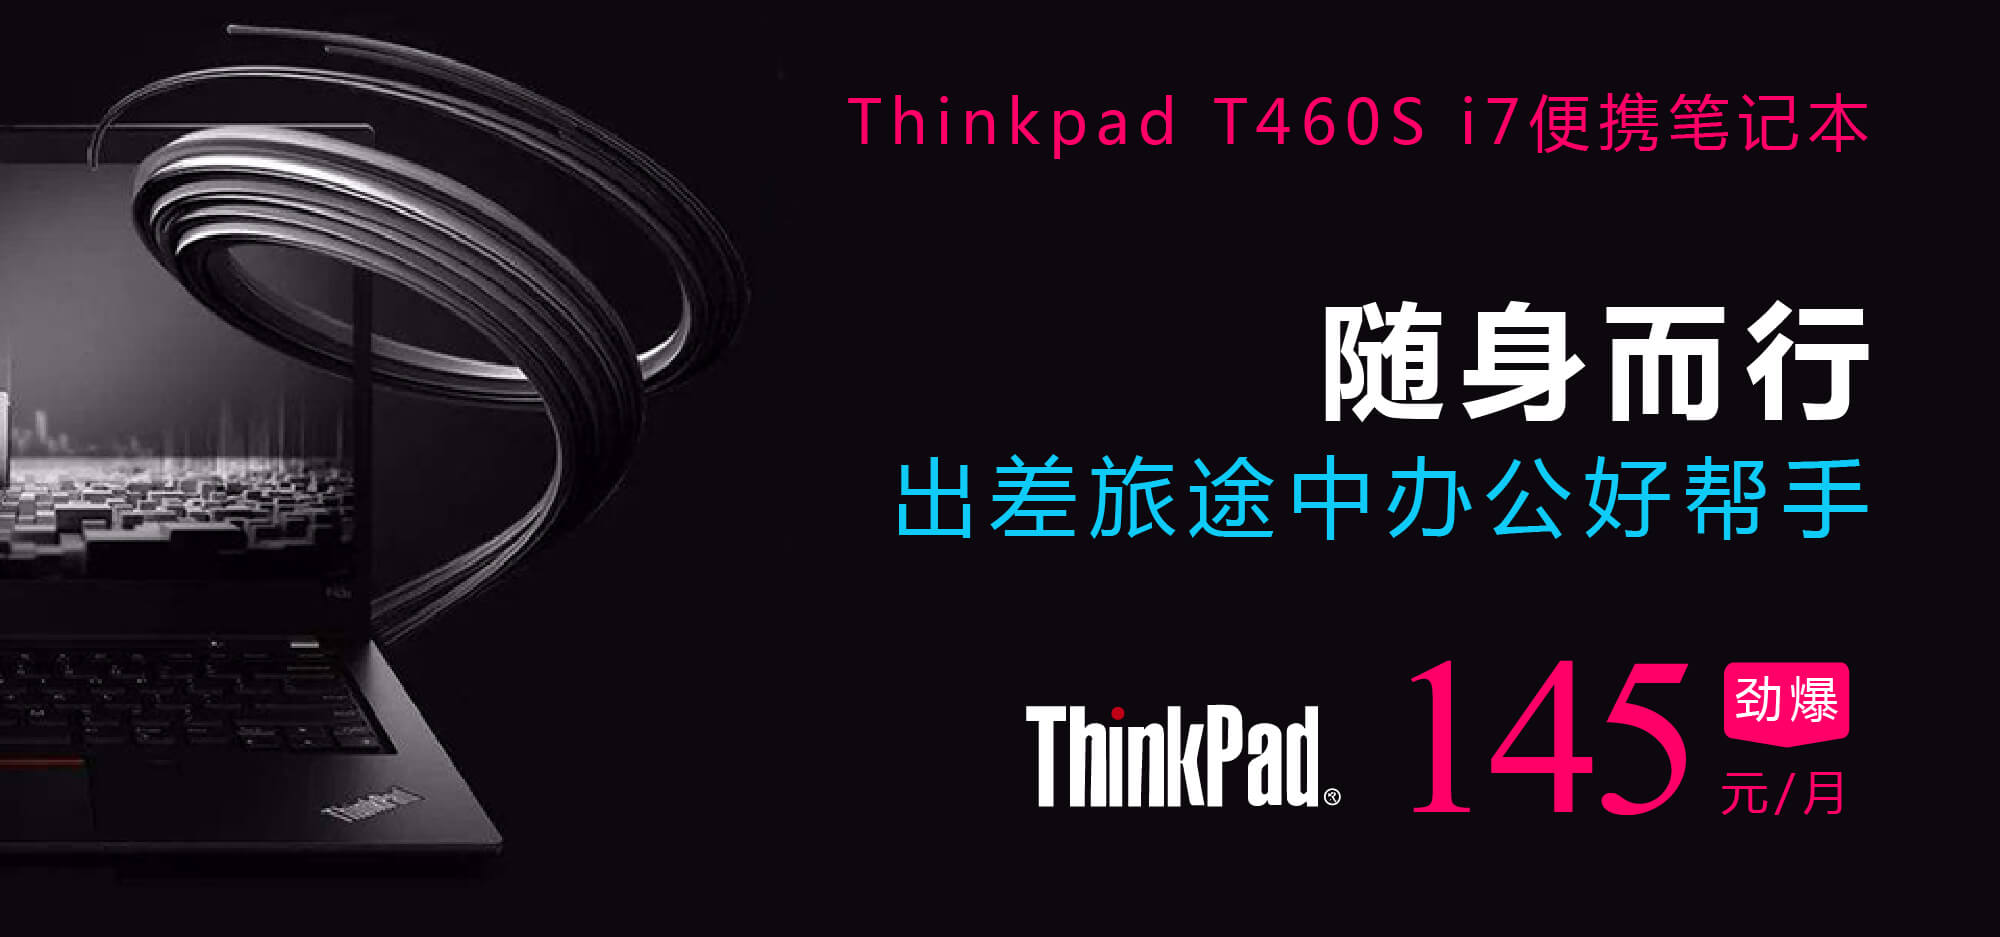 Thinkpad T460s